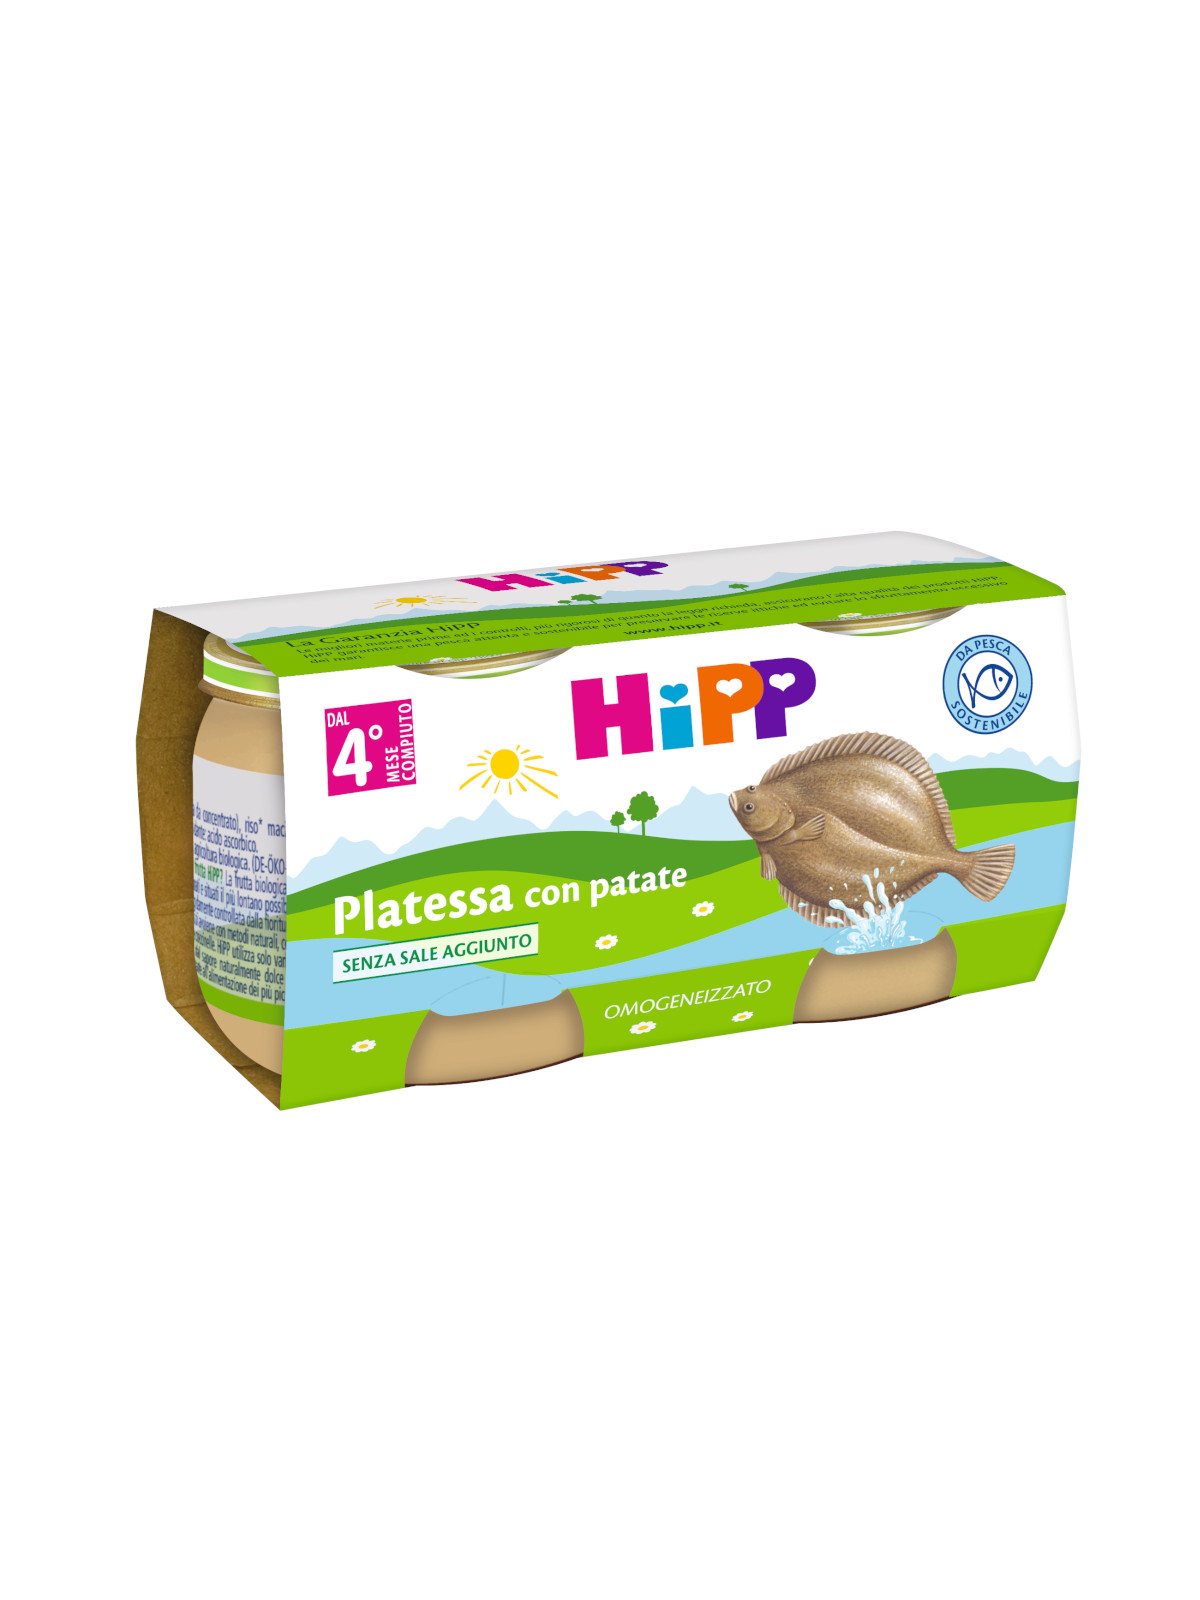 Hipp - omogeneizzato platessa con patate 2x80g - Hipp